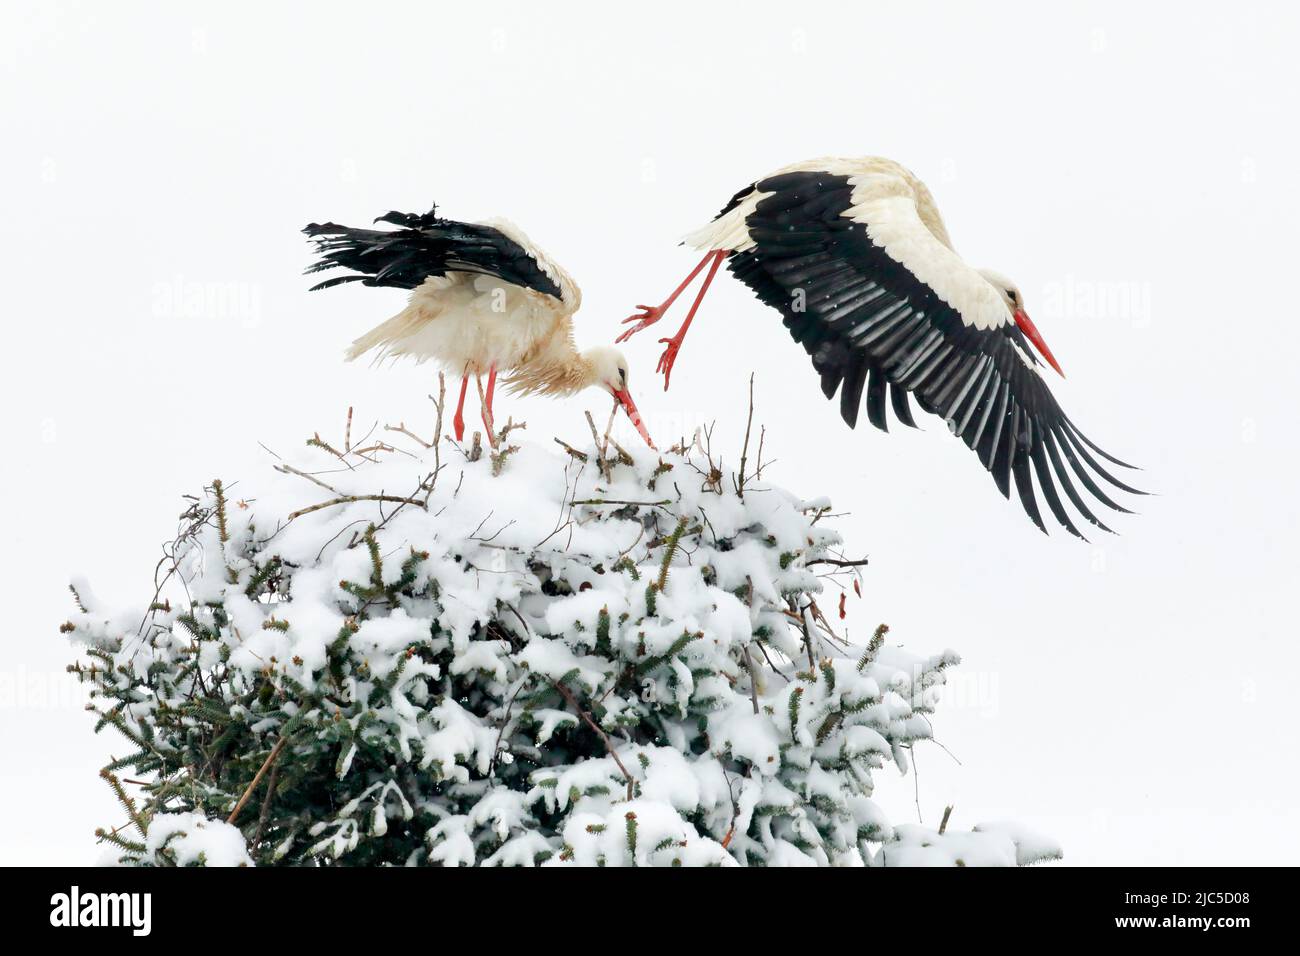 Weißstorchen Paar steht inmitten eines Schneesturms im Nest, das Männchen fliegt für die Nahrungssuche davon, Brütezeit im Frühling, Oetwil am See, Ka Foto Stock